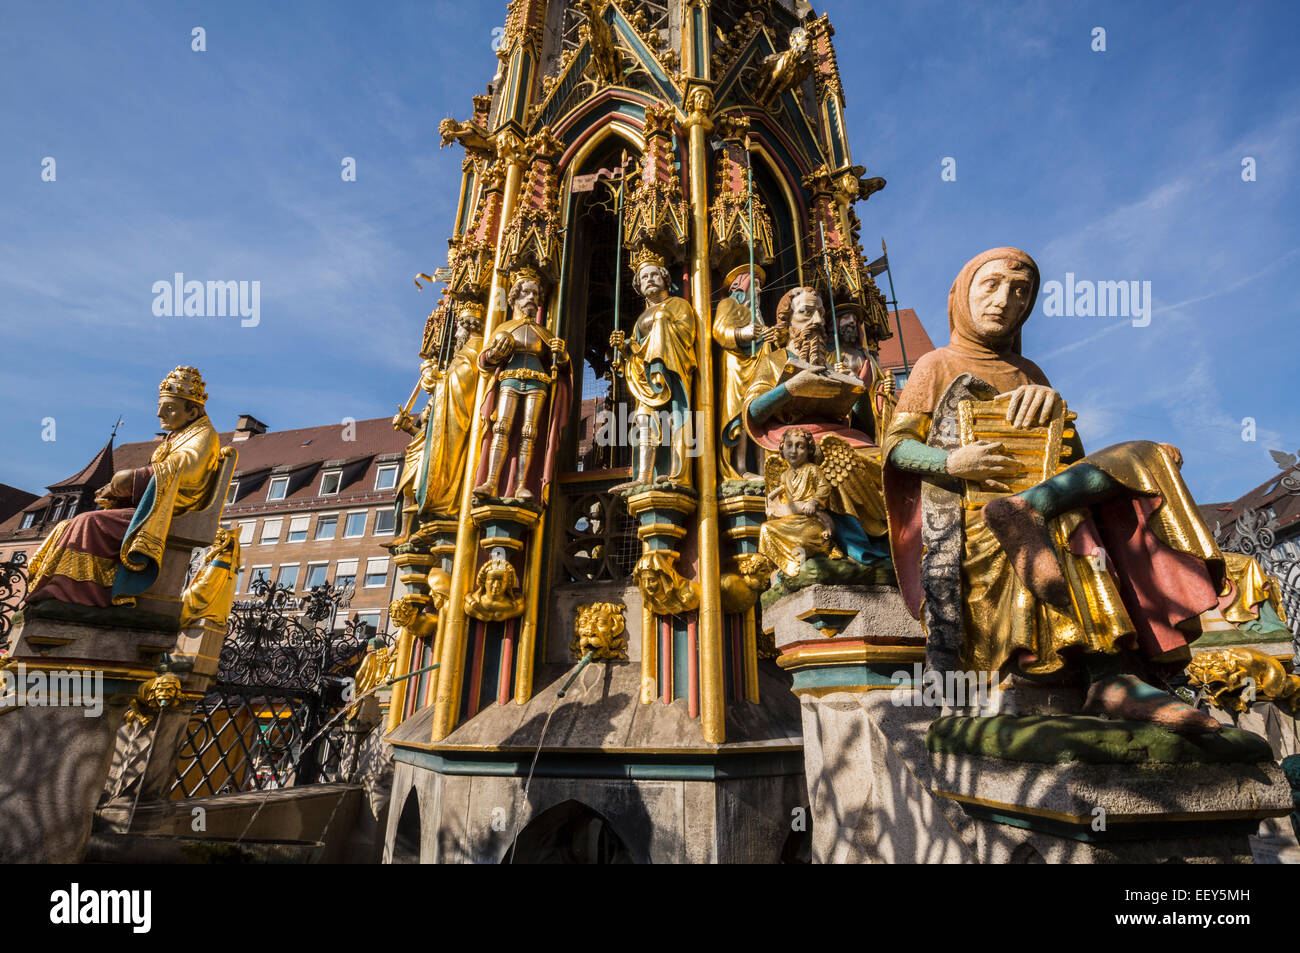 Dettaglio del Schoner Brunnen fontana e la statua nella piazza del mercato di Norimberga, Germania Foto Stock